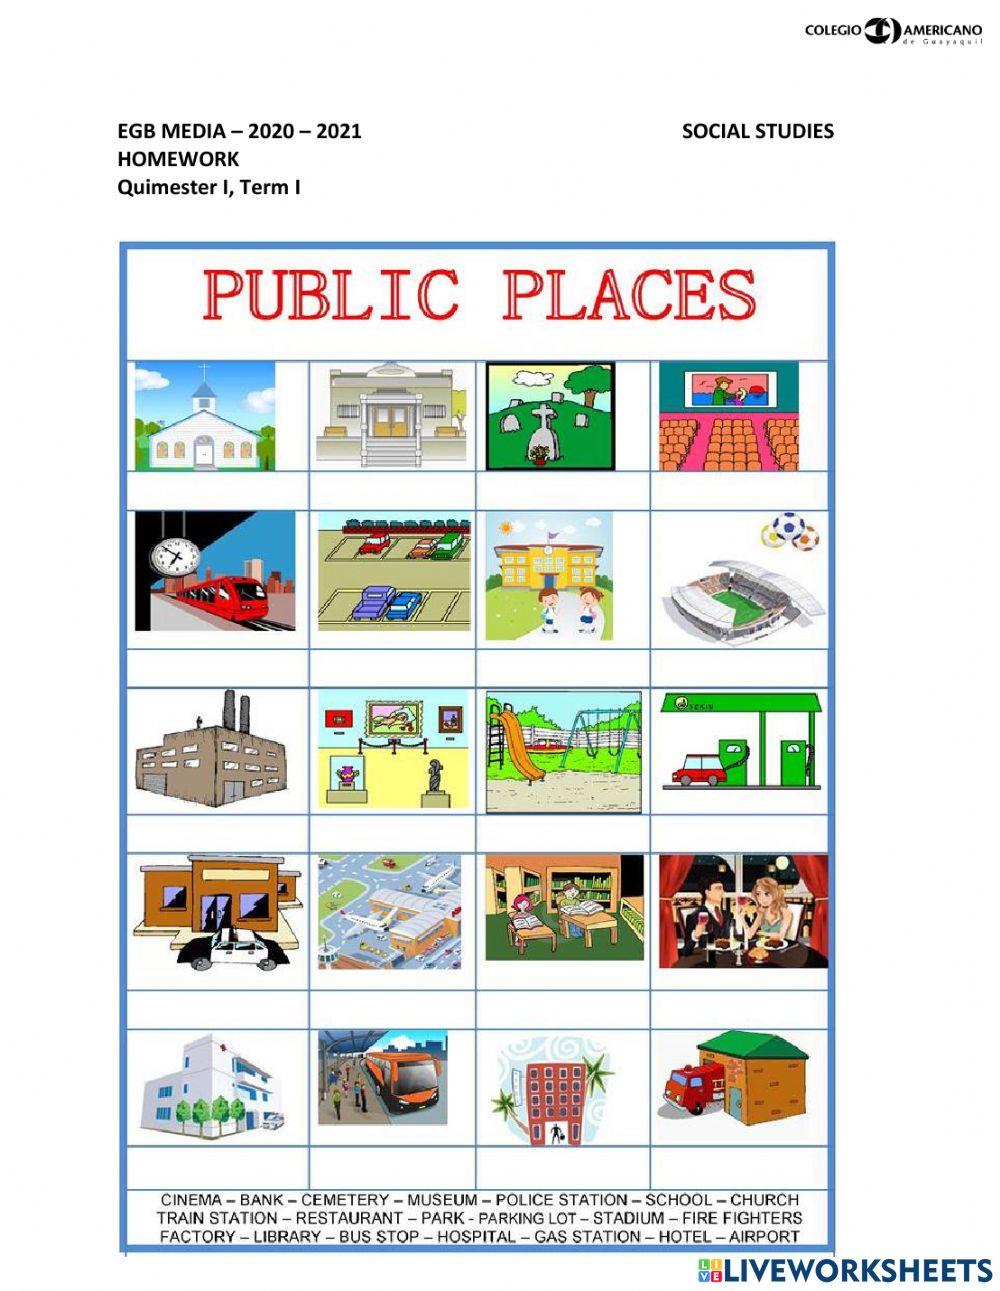 Public places